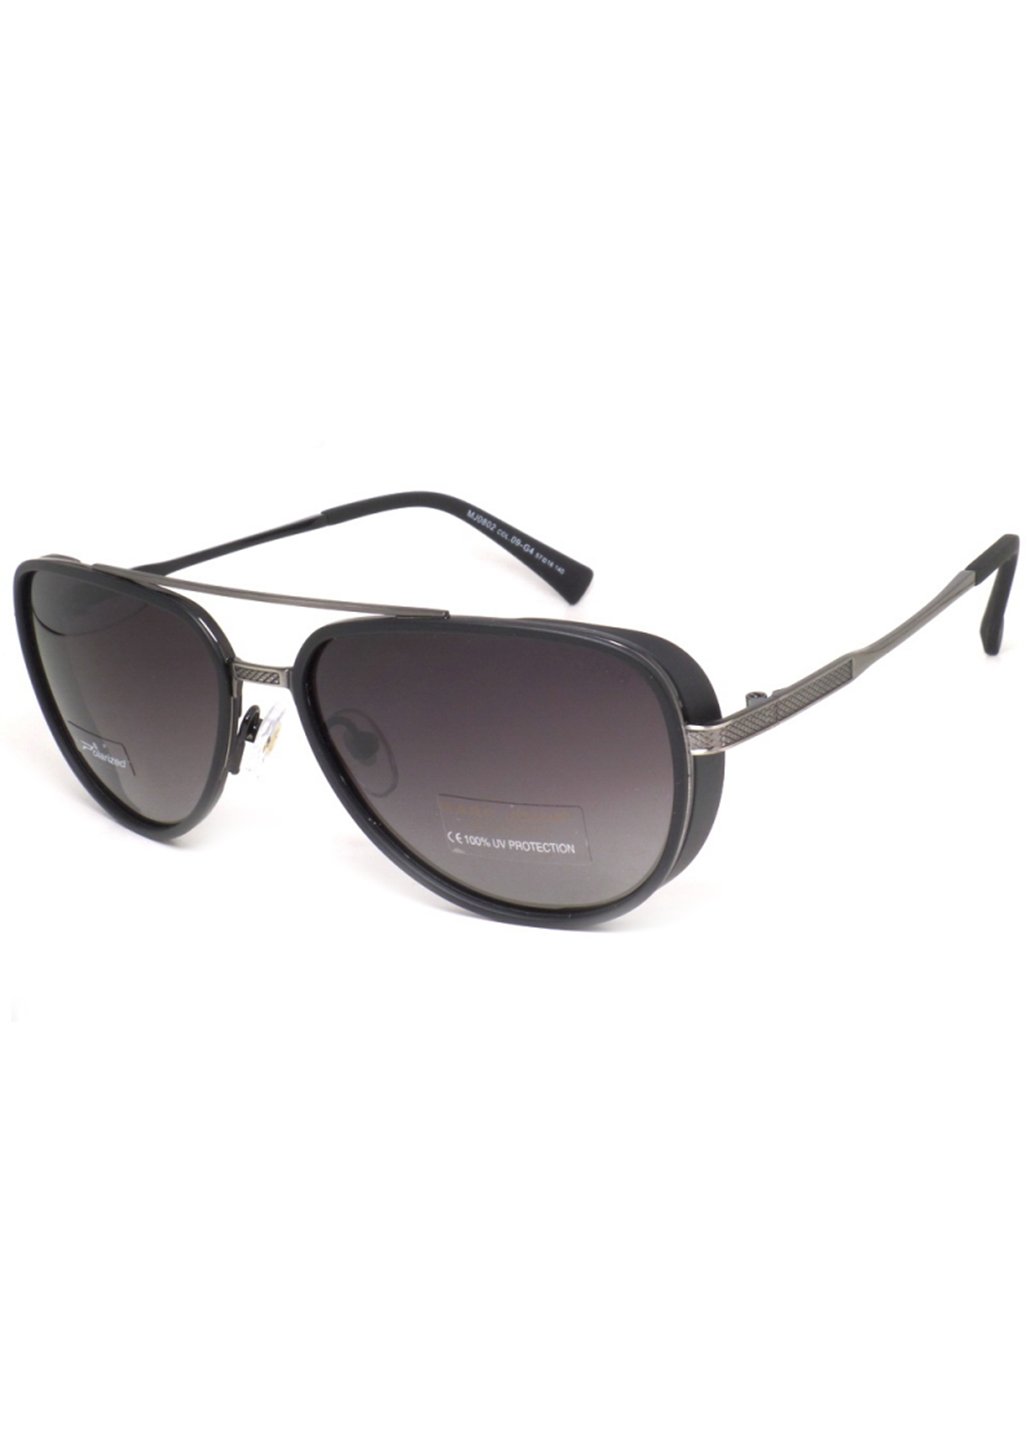 Купить Мужские солнцезащитные очки Marc John с поляризацией MJ0802 190002 - Черный в интернет-магазине